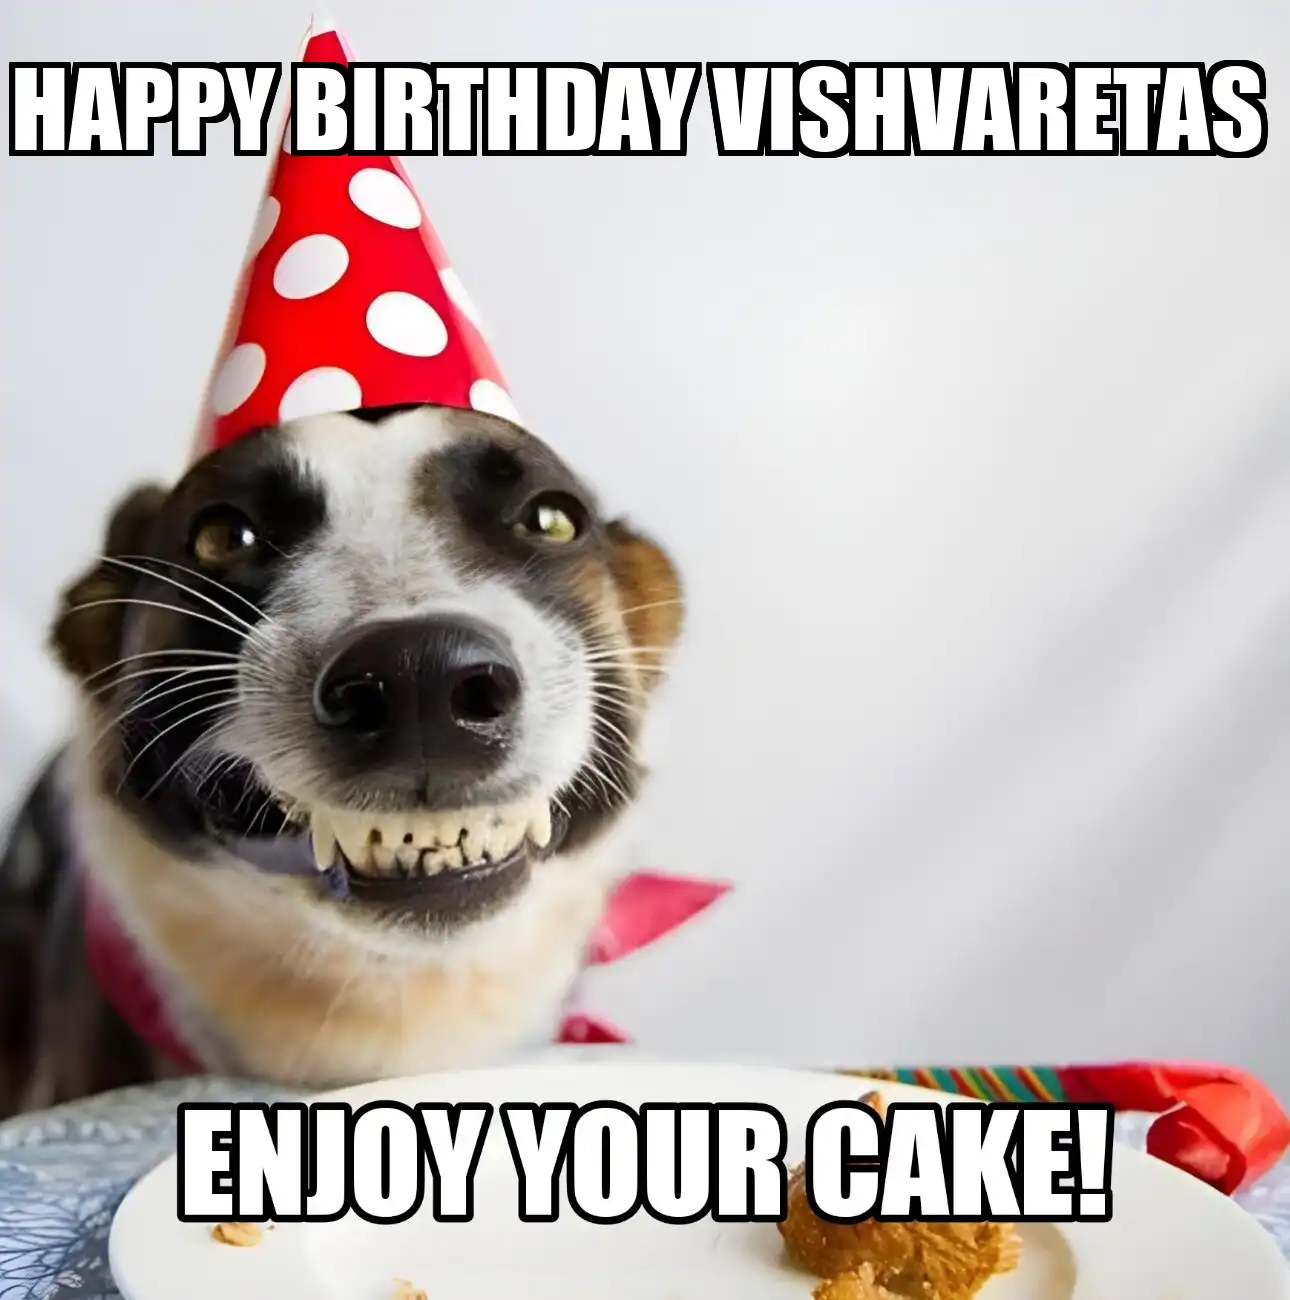 Happy Birthday Vishvaretas Enjoy Your Cake Dog Meme